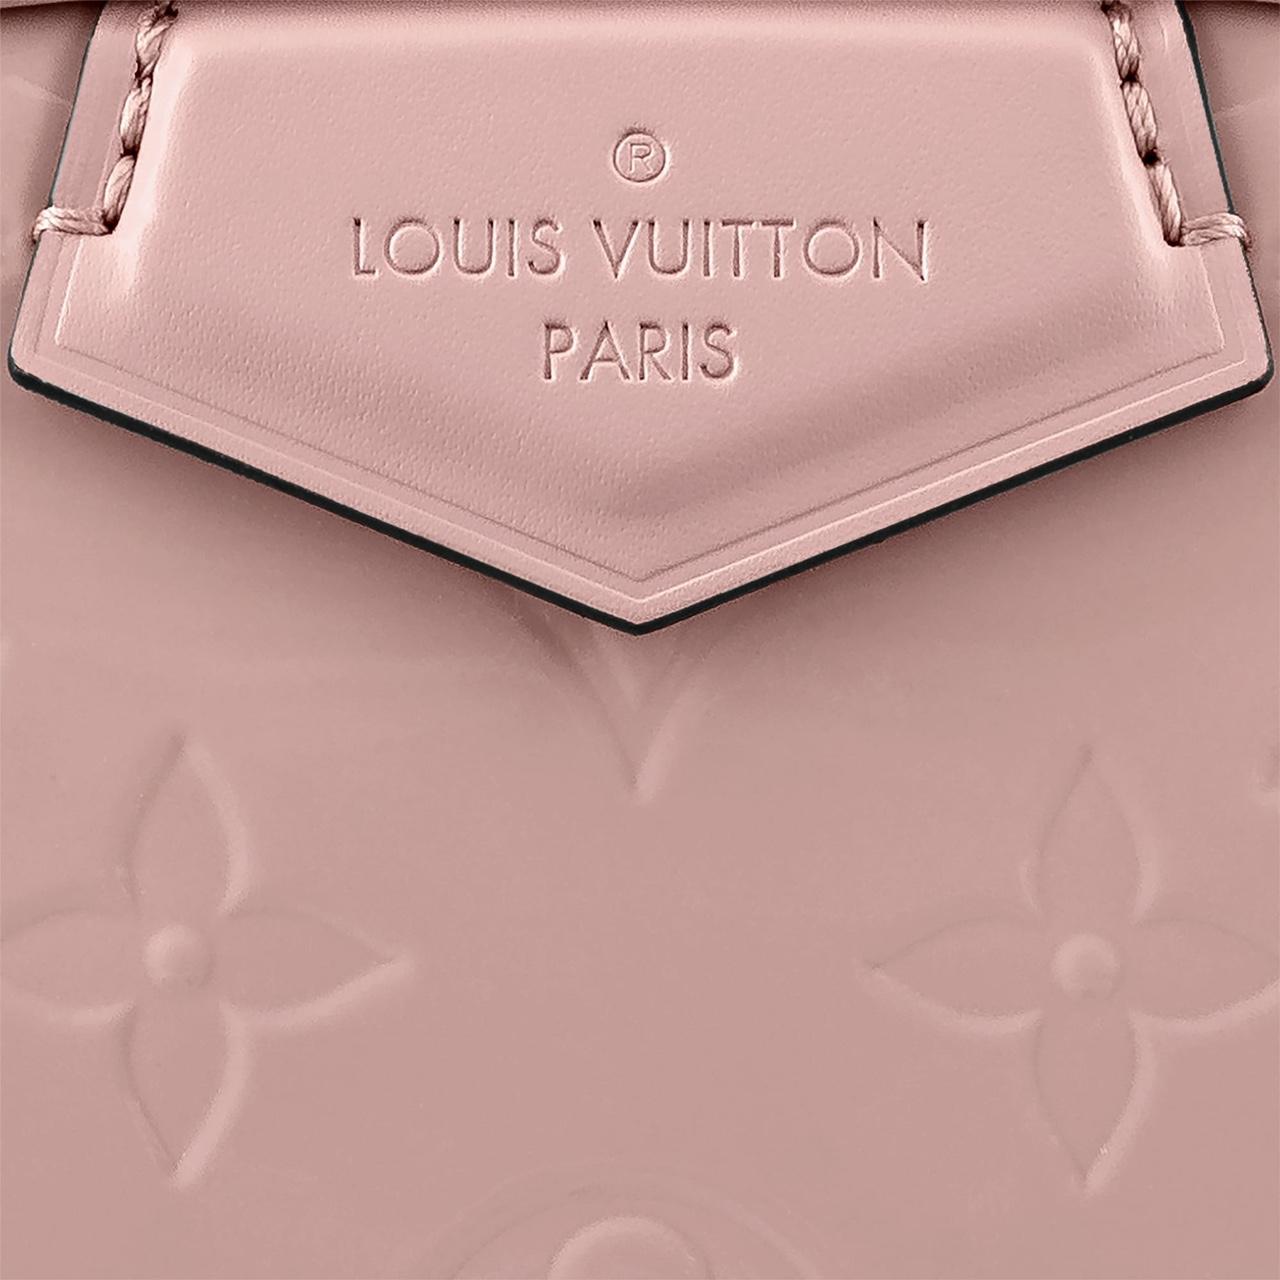 Stamped bag - LV Georges BB M53941 Rose Poudre - Depop